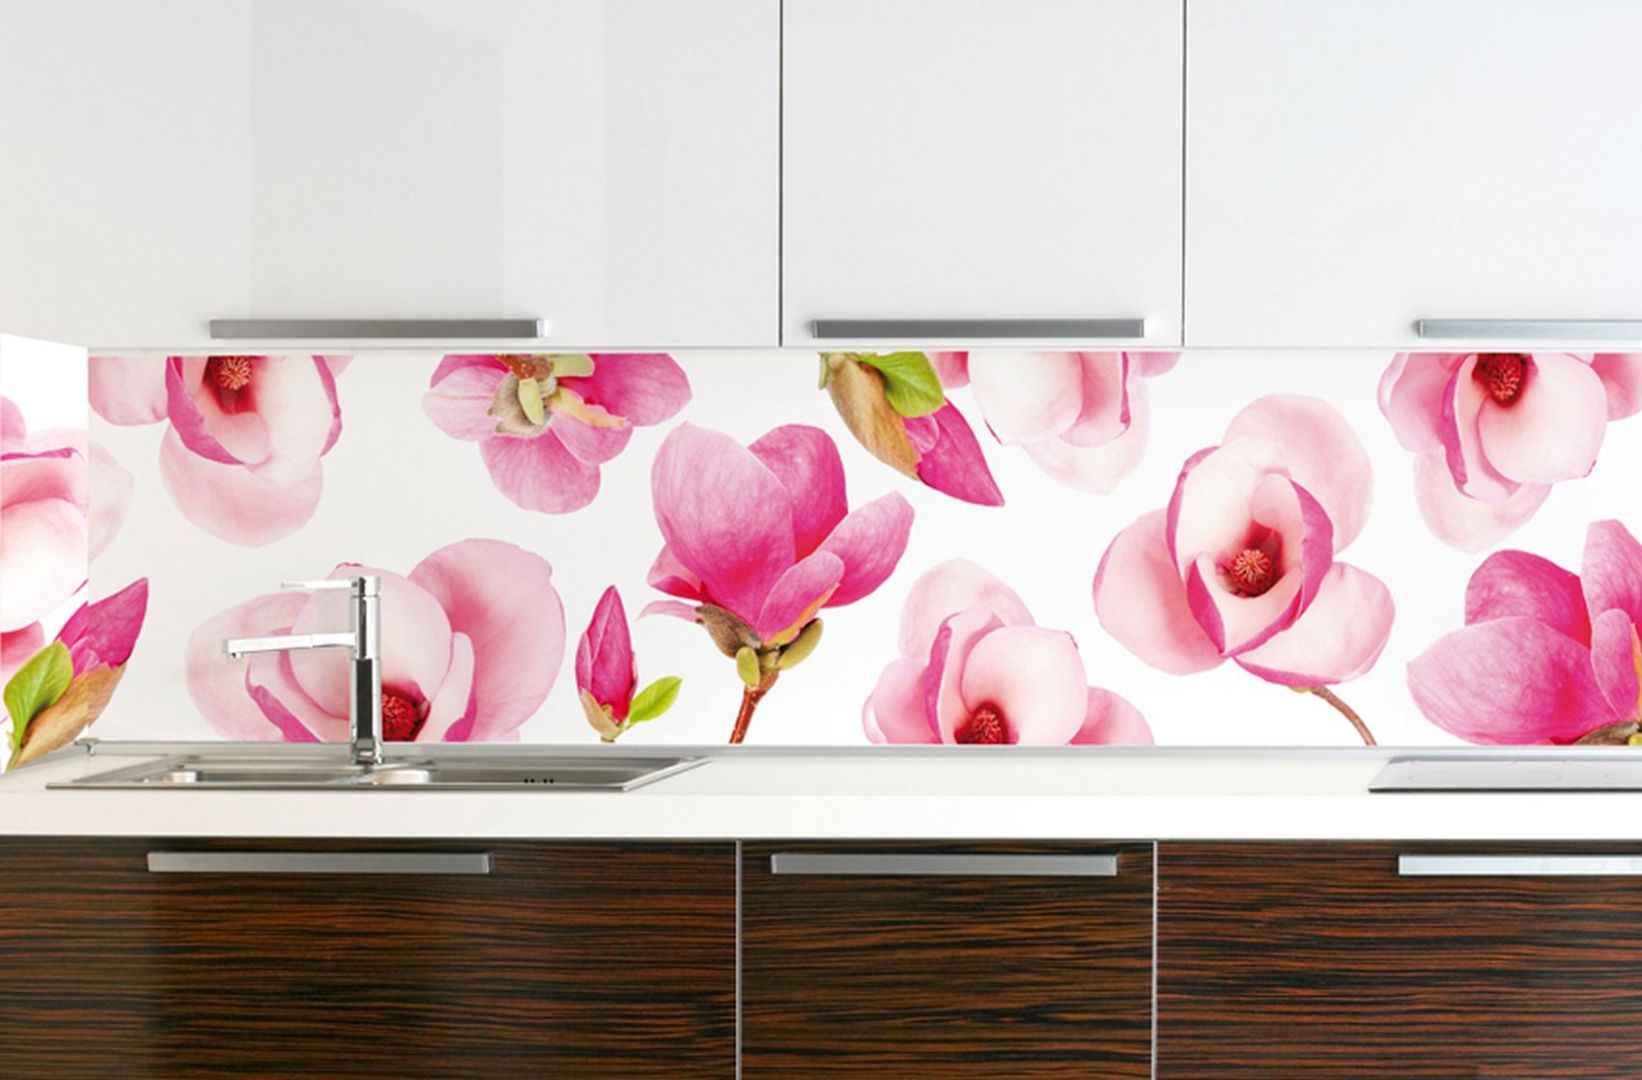 Fototapeta z zakwitającymi magnoliami stanie się niepowtarzalną ozdobą ściany nad blatem. Fot. Art of wall.